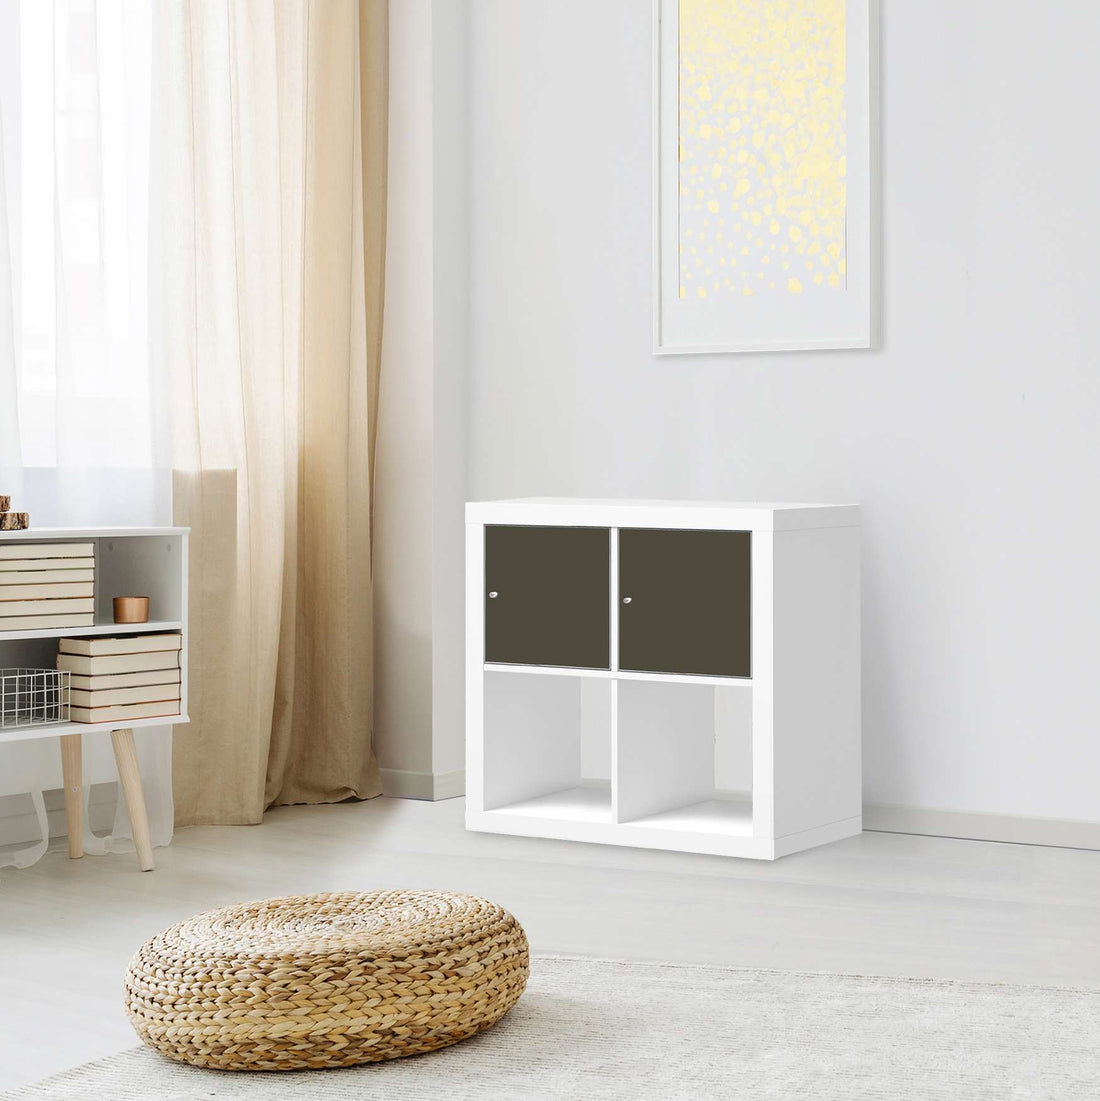 Möbel Klebefolie Braungrau Dark - IKEA Expedit Regal 2 Türen Quer - Wohnzimmer